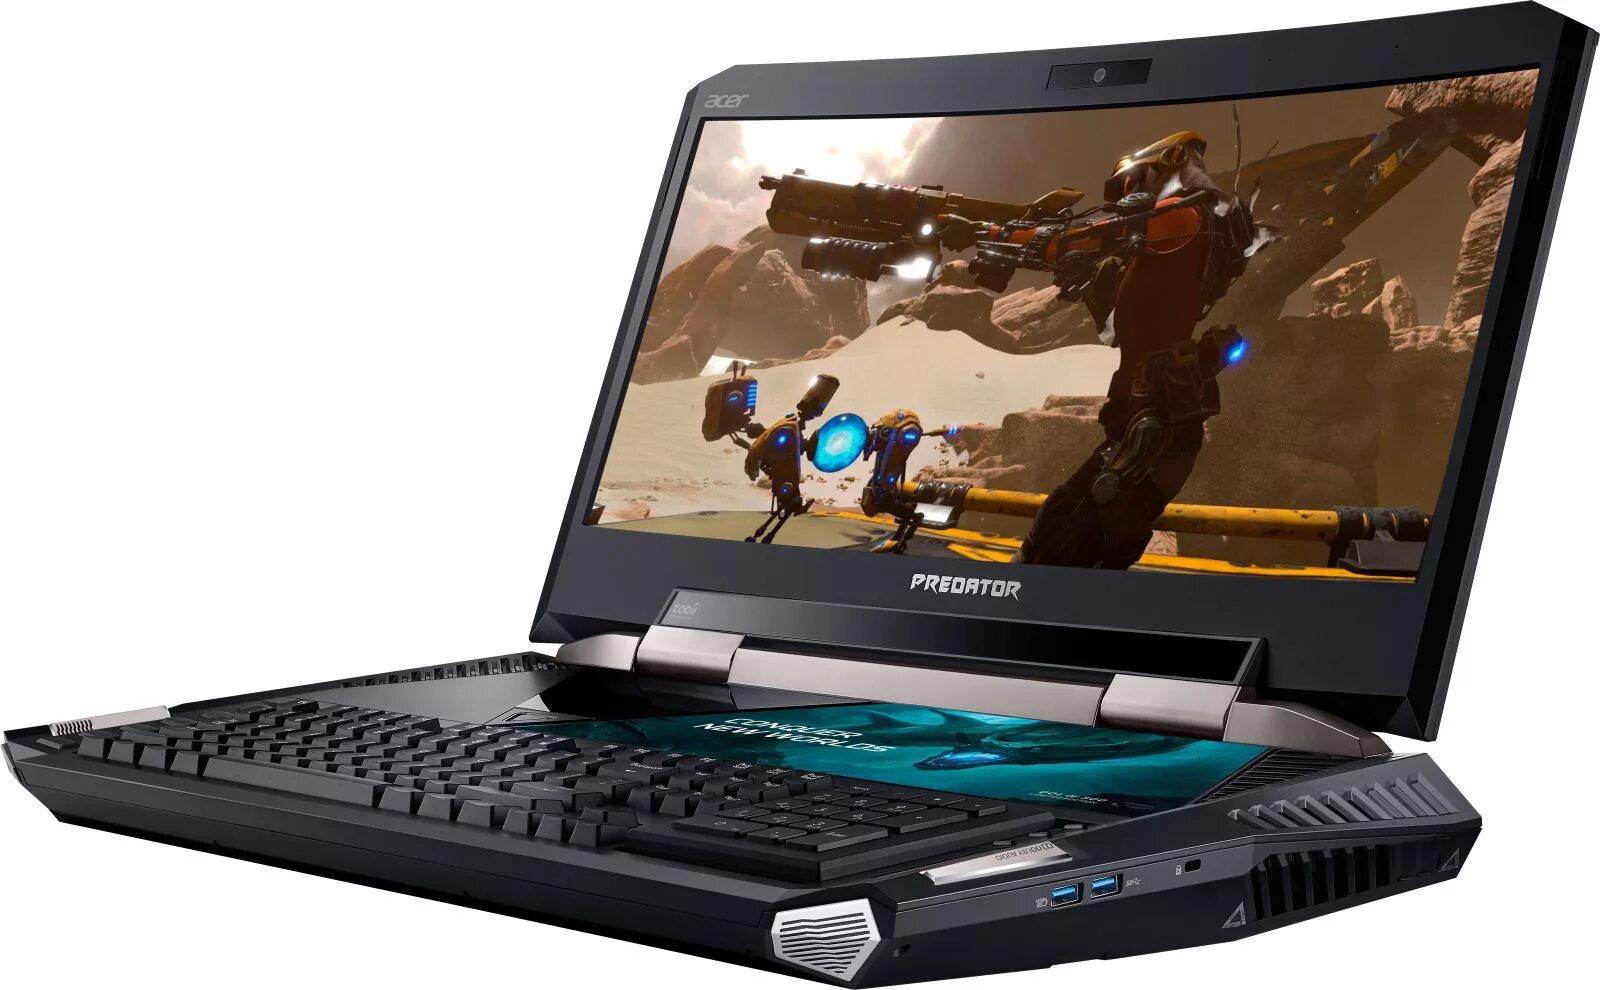 Ноутбук Acer Predator 21x. Ноутбук ASUS Predator 21x. Игровой ноутбук Acer Predator 21 x. Acer Predator 21x (gx21-71). Игровые модели ноутбуков